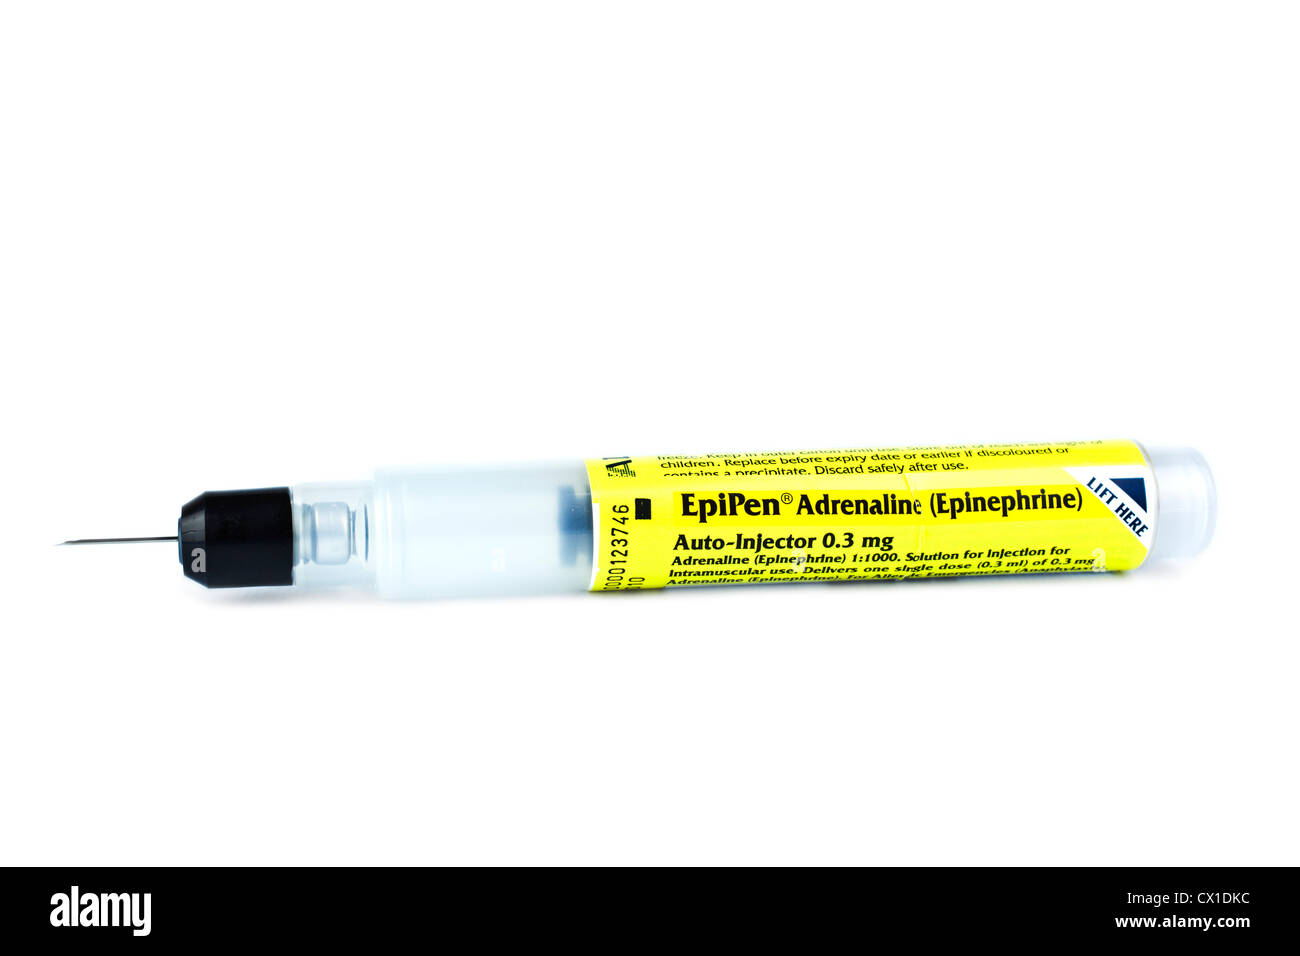 Epipen adrenalina de emergencia la epinefrina inyectable para el tratamiento de la anafilaxia pluma reacciones alérgicas Foto de stock